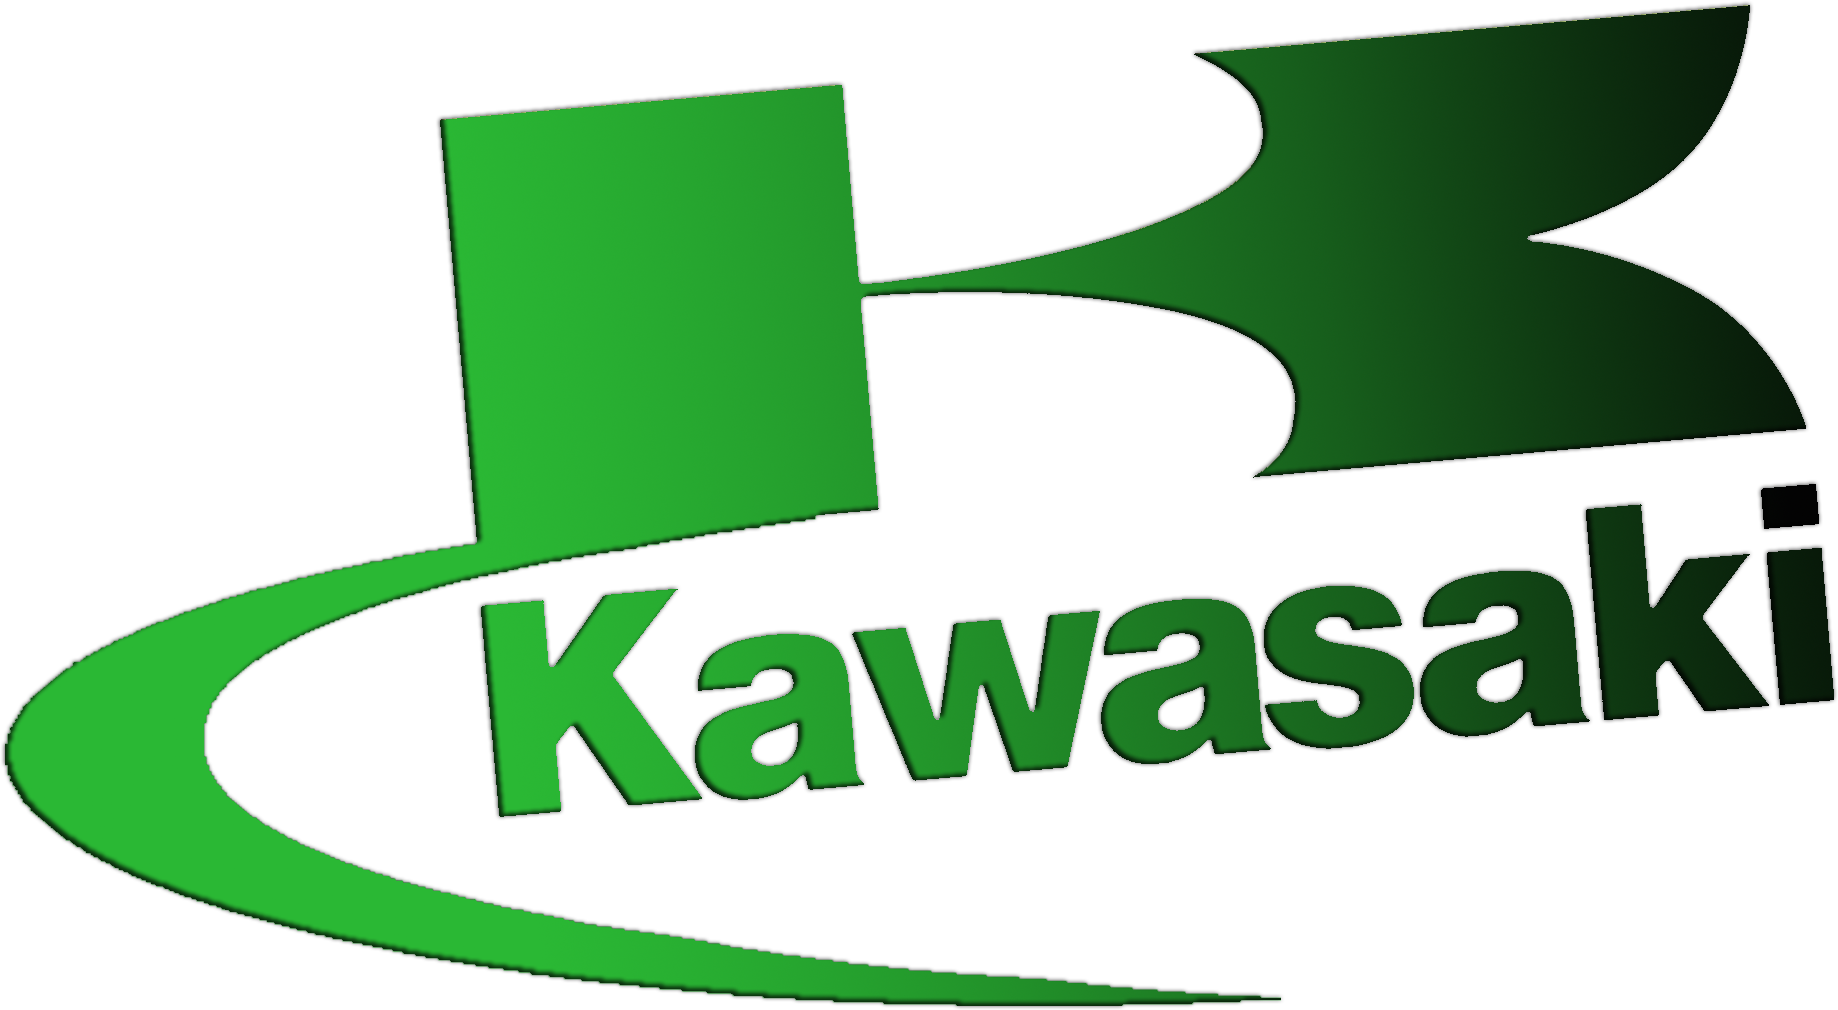 Кавасаки логотип PNG изображения фон